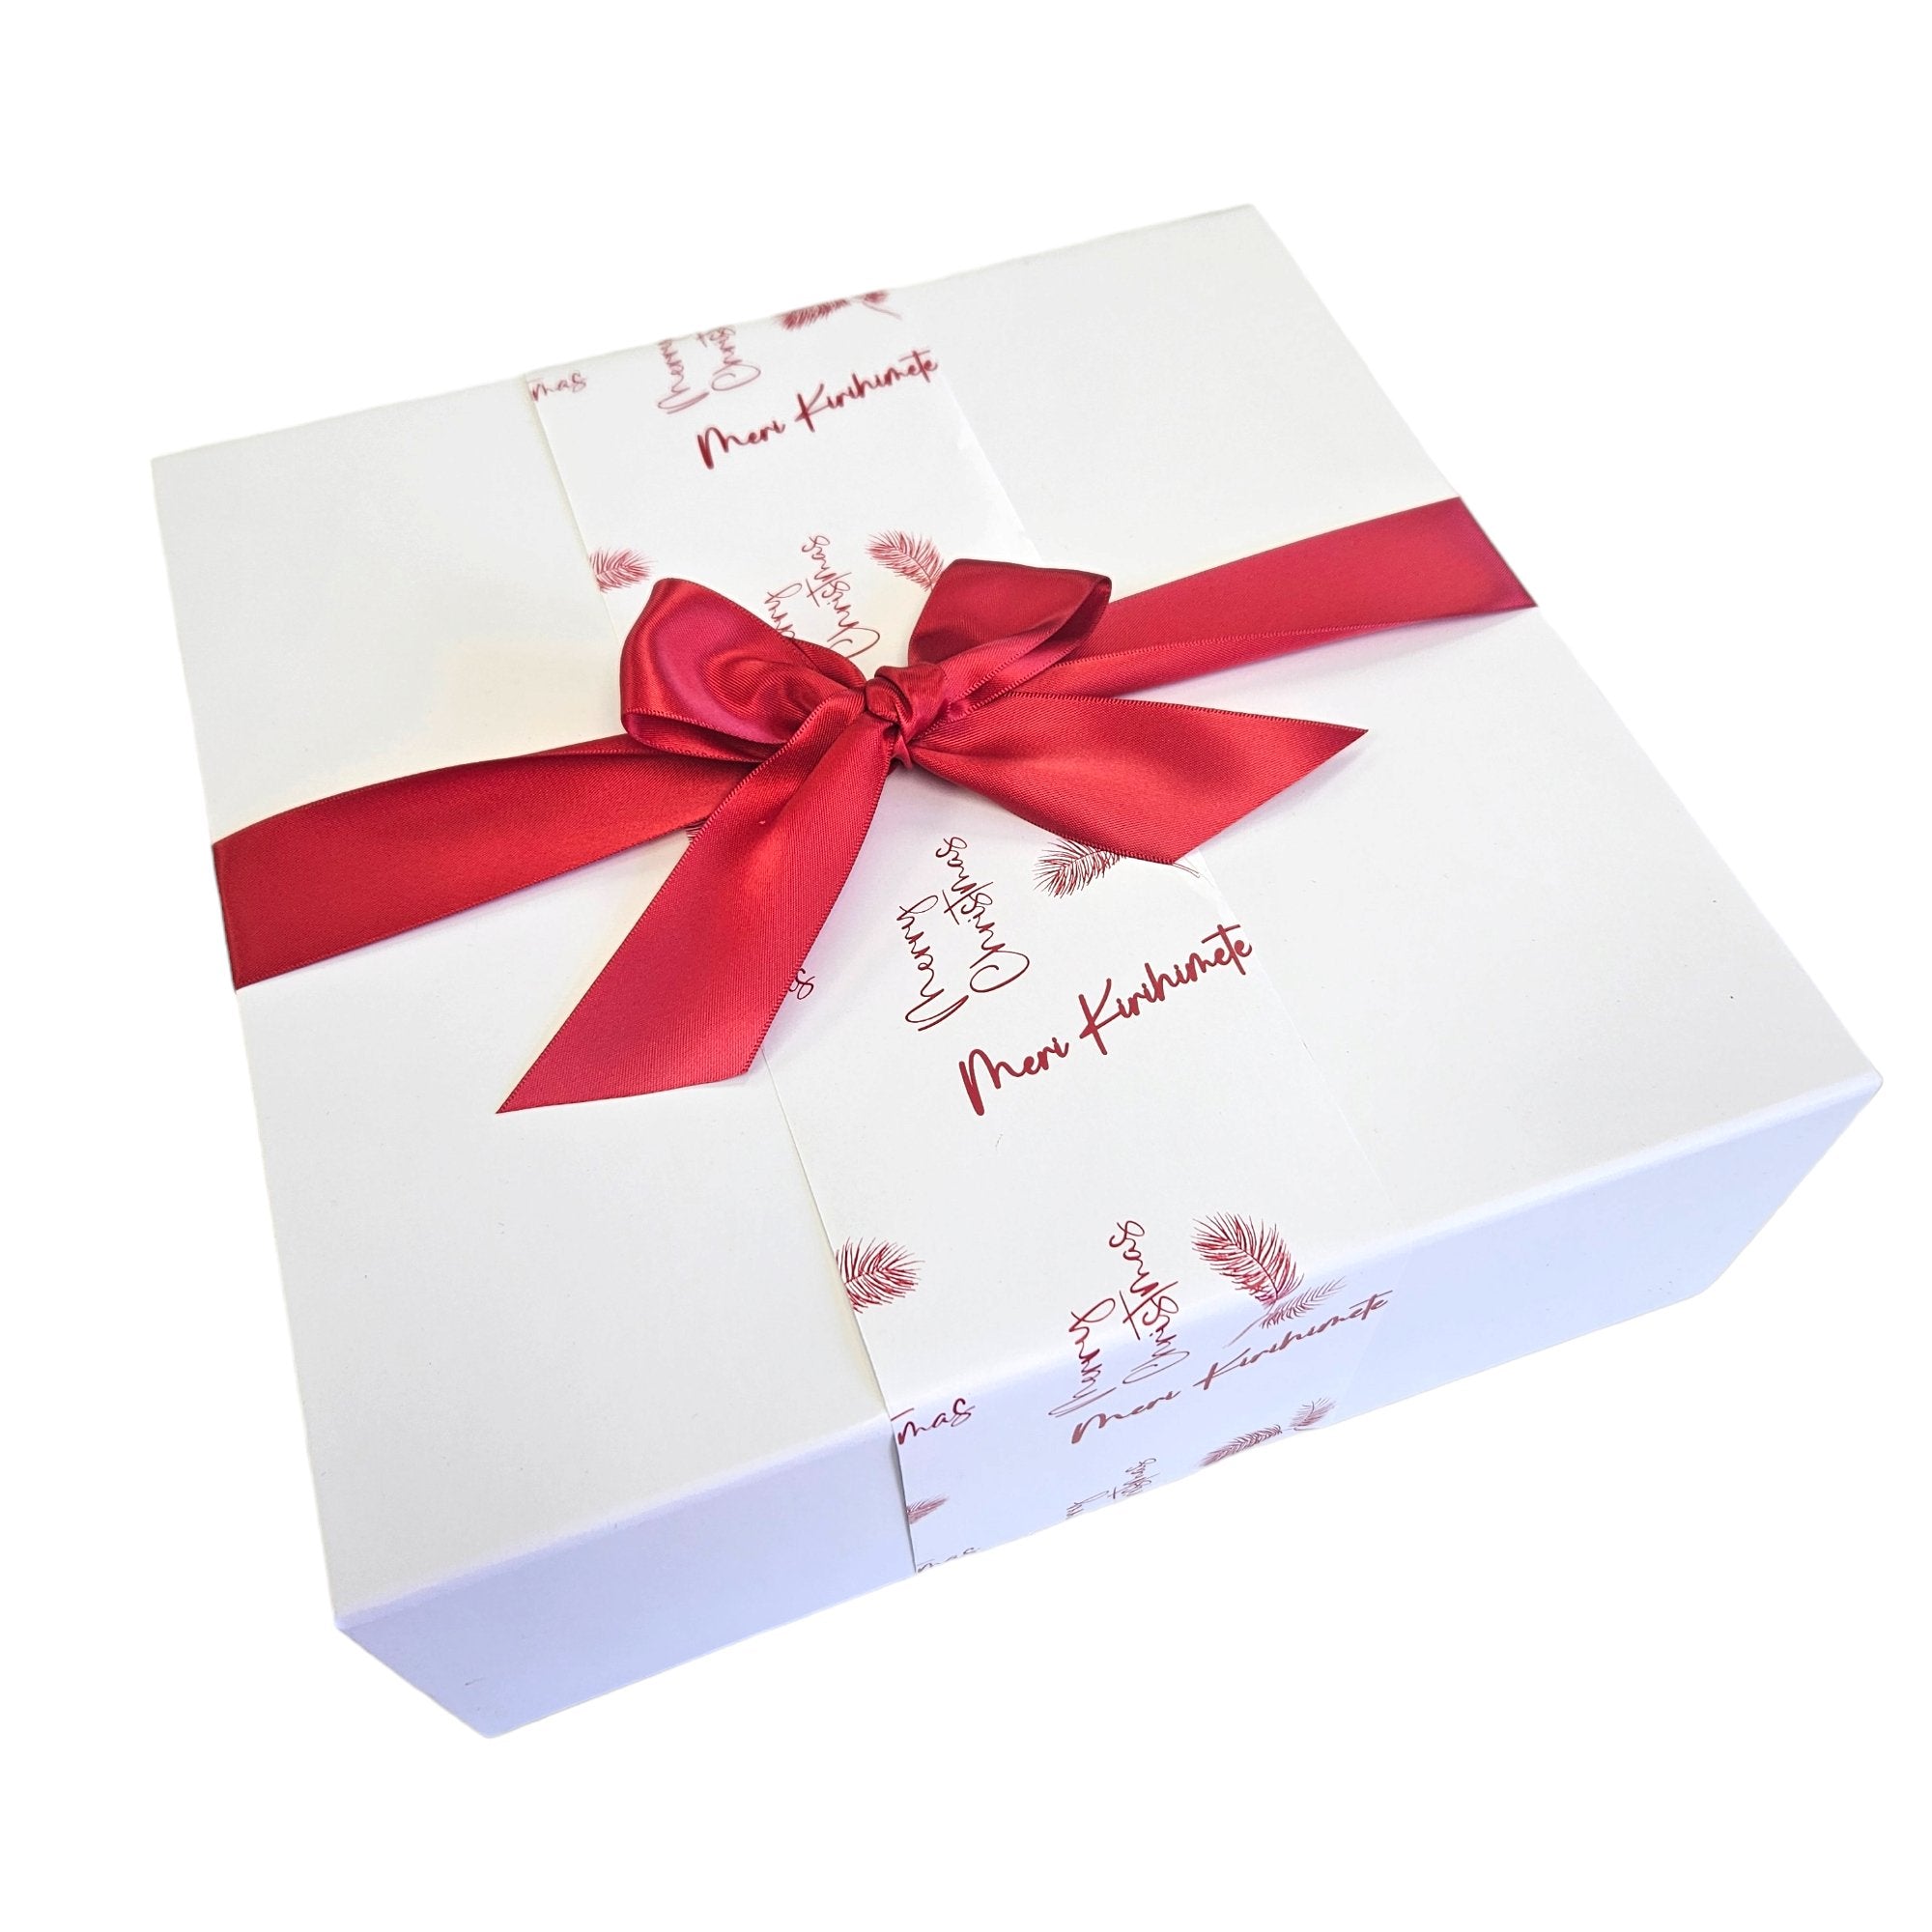 Kids treat box - Beautiful Gifts